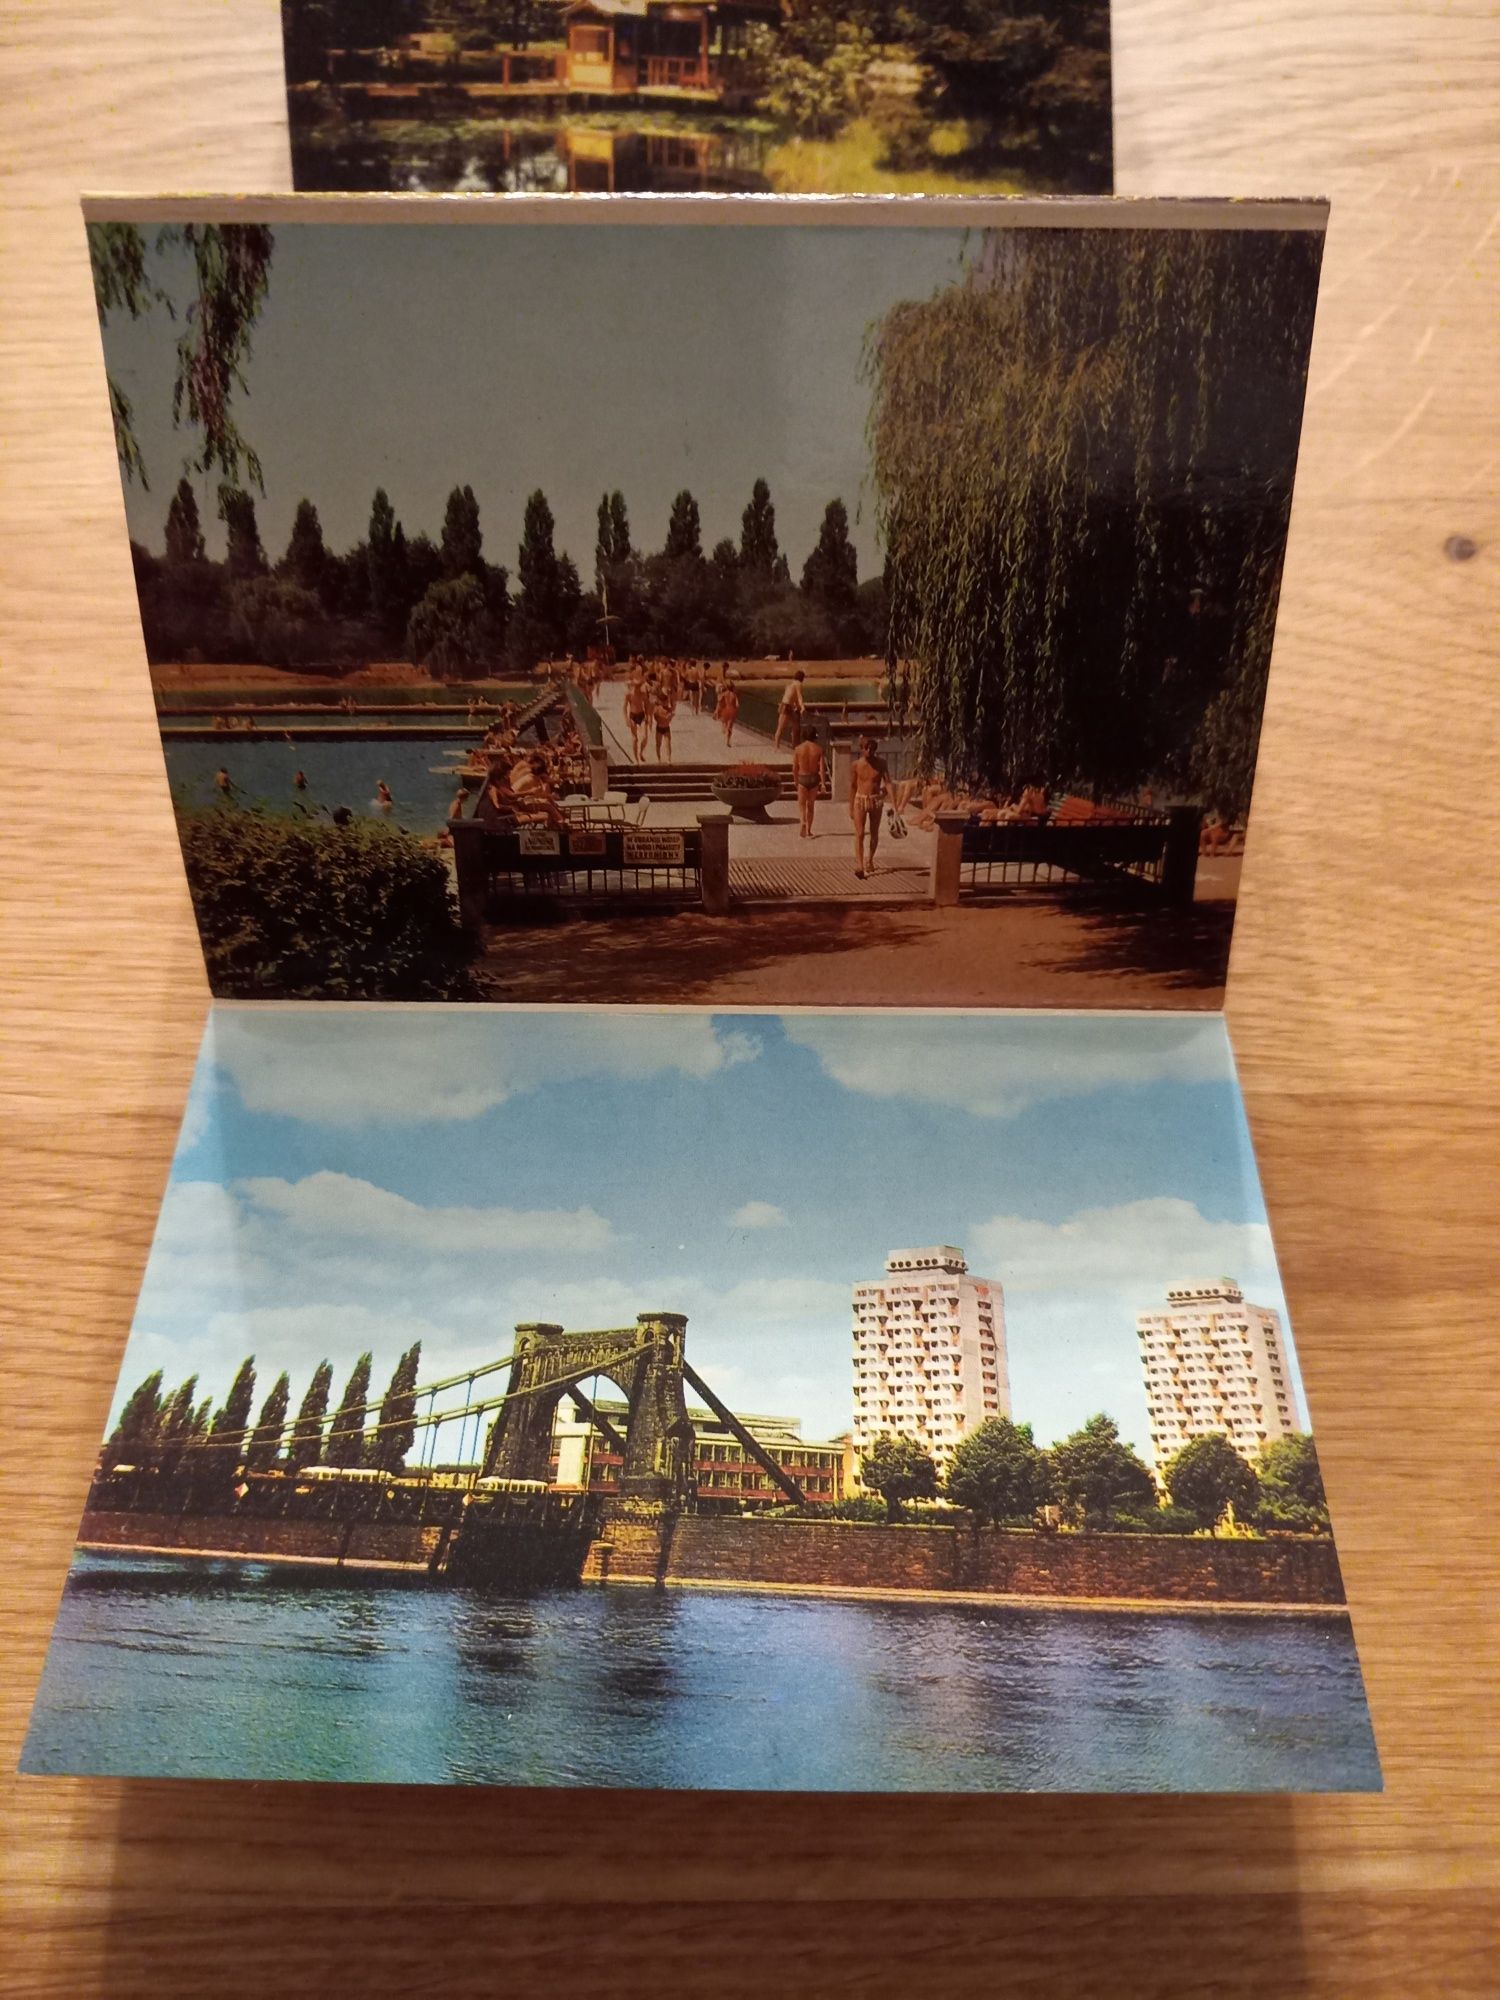 Mini pocztówki / zdjęcia Wrocław z lat 70 XX wieku PRL